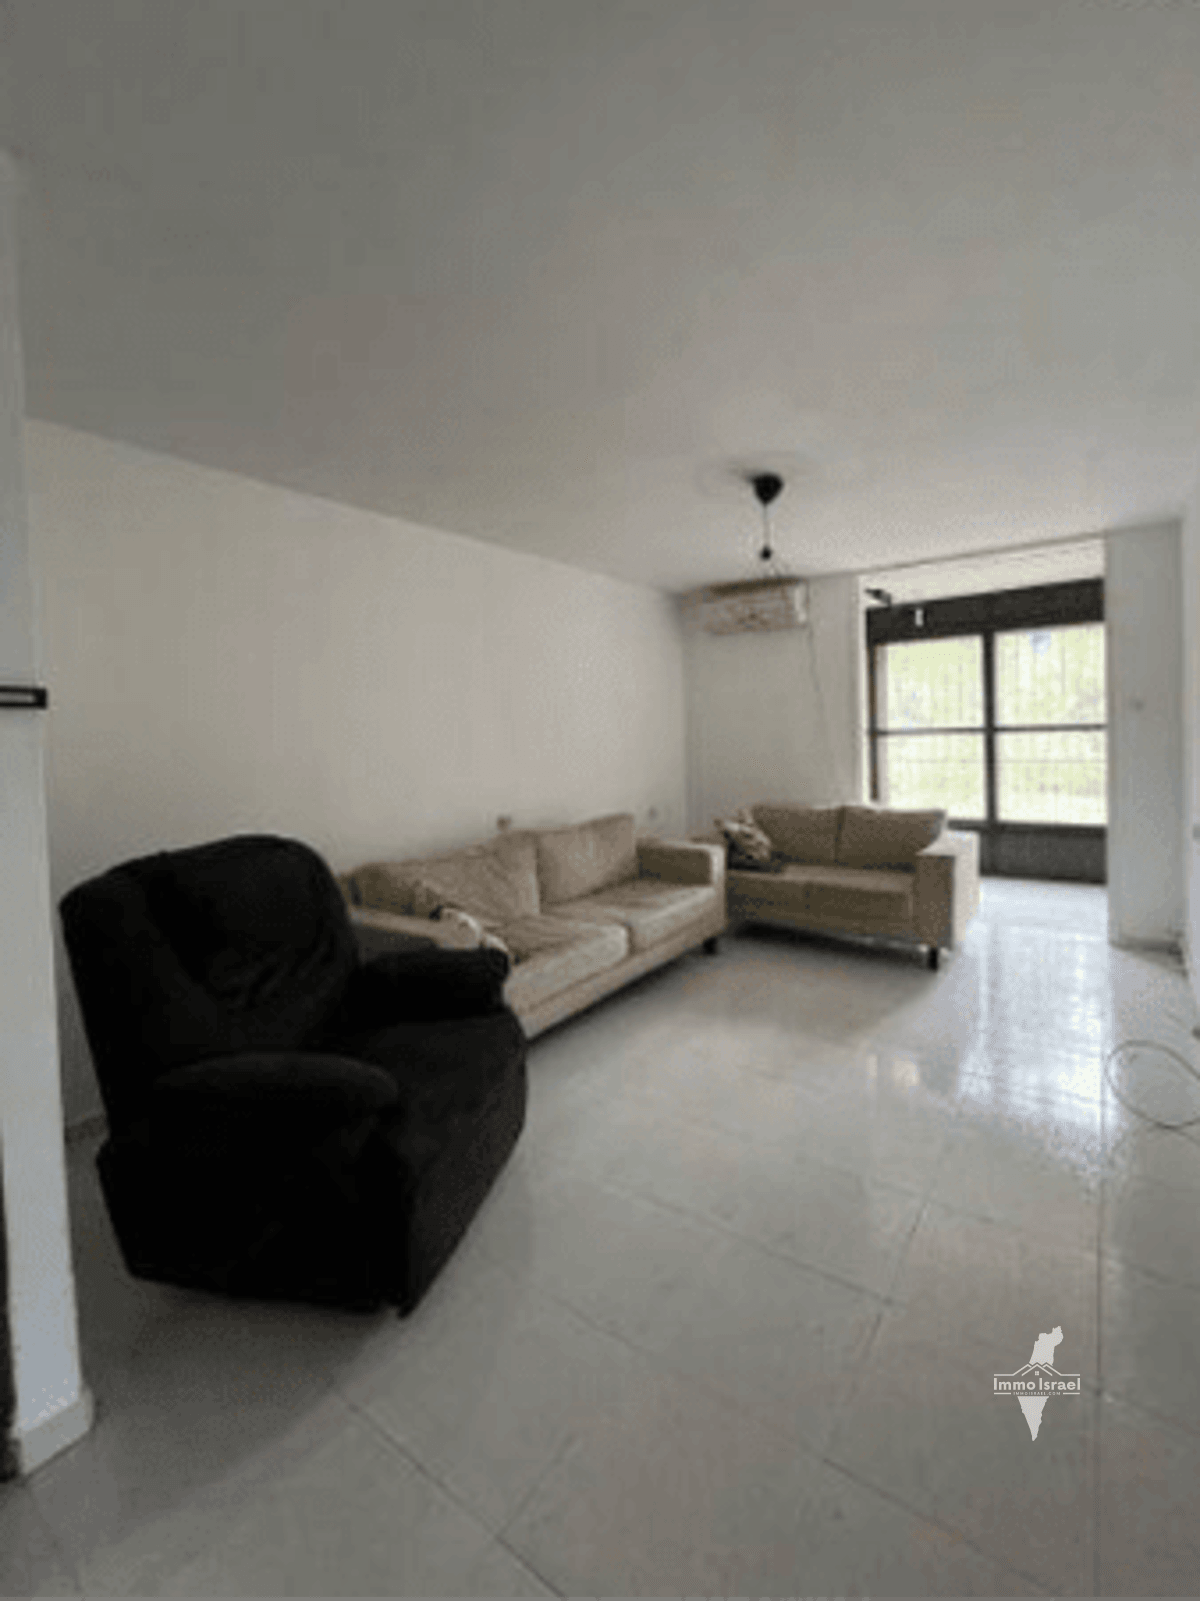 For Sale: 3.5-Room Apartment on Weizman Street, Petah Tikva